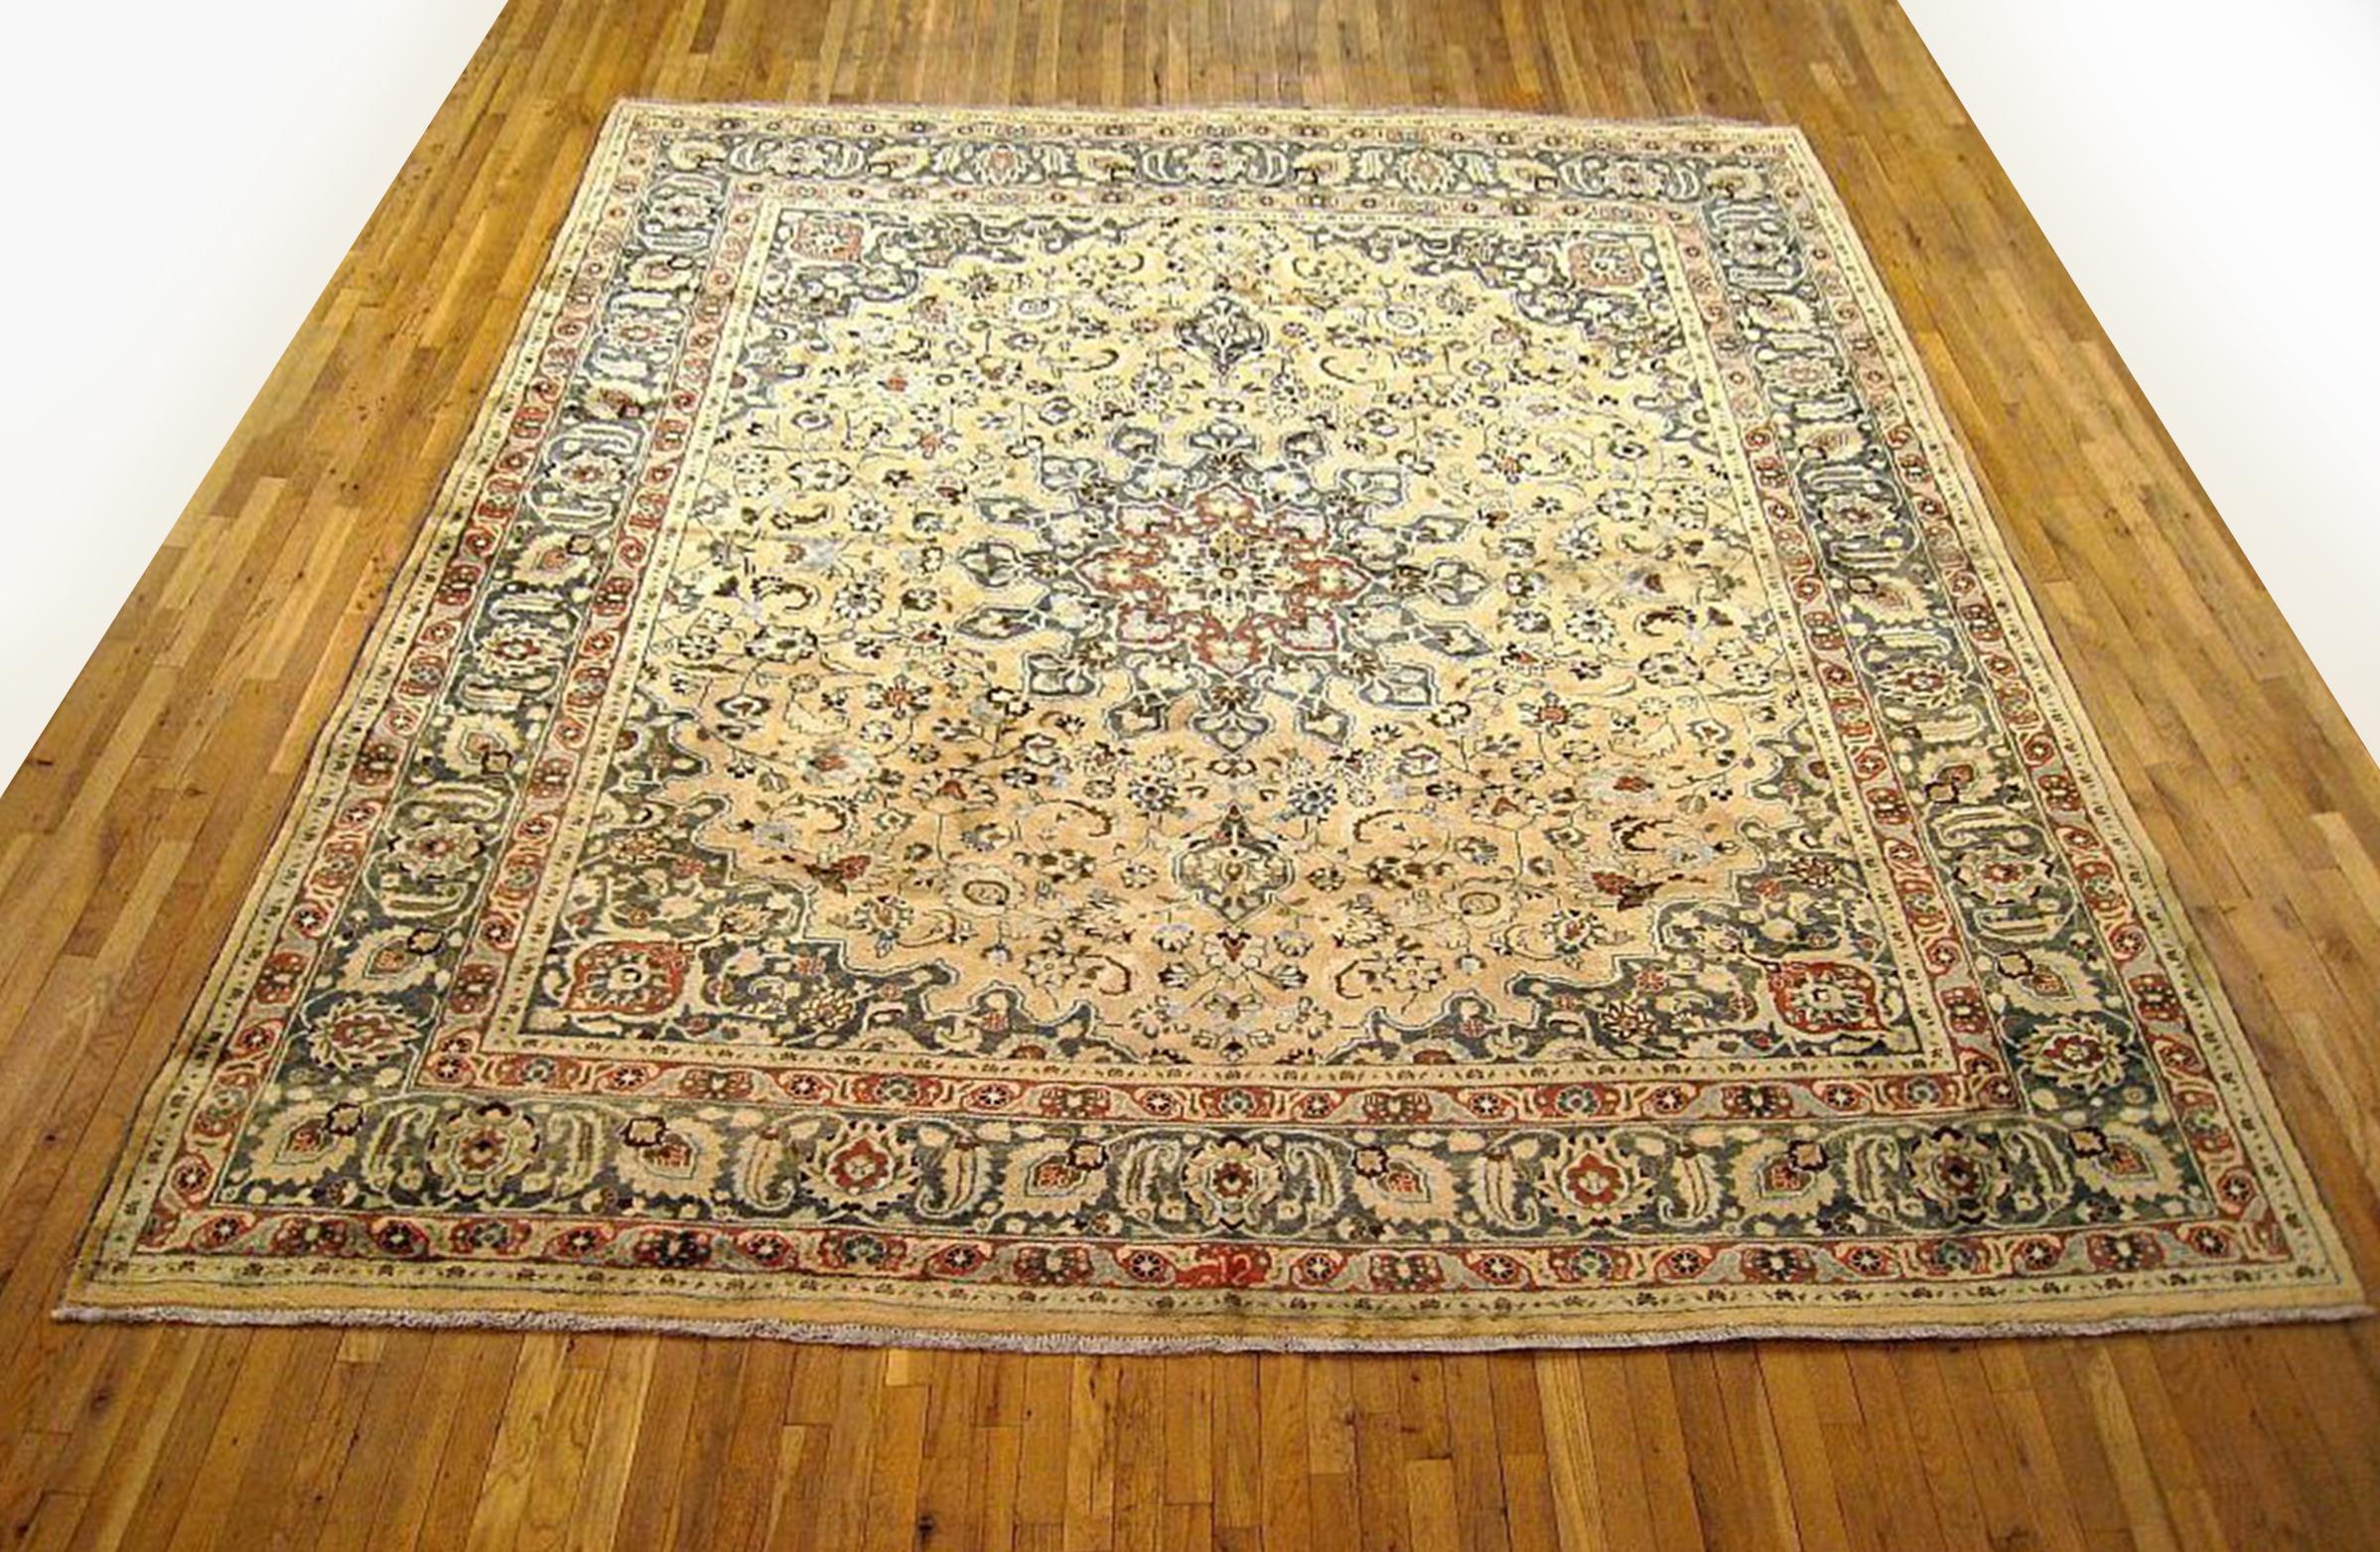 Vintage Persian Mesh Orientteppich, Raumgröße

Ein Vintage Persian Mesh orientalischen Teppich, Größe 11'5